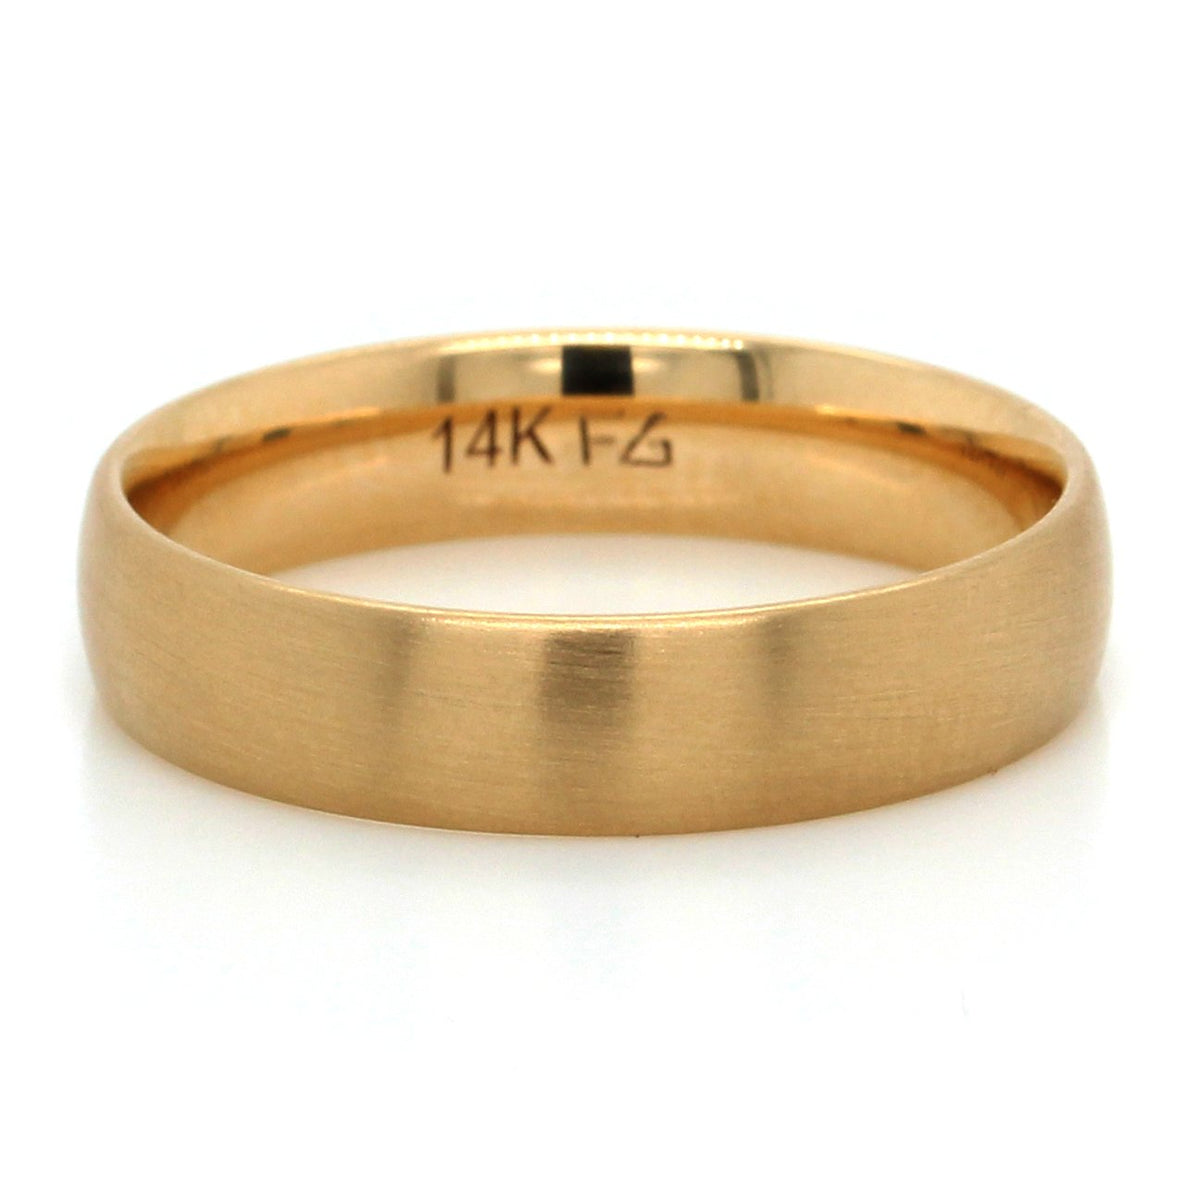 14K Yellow Gold Brushed Finish Wedding Ring